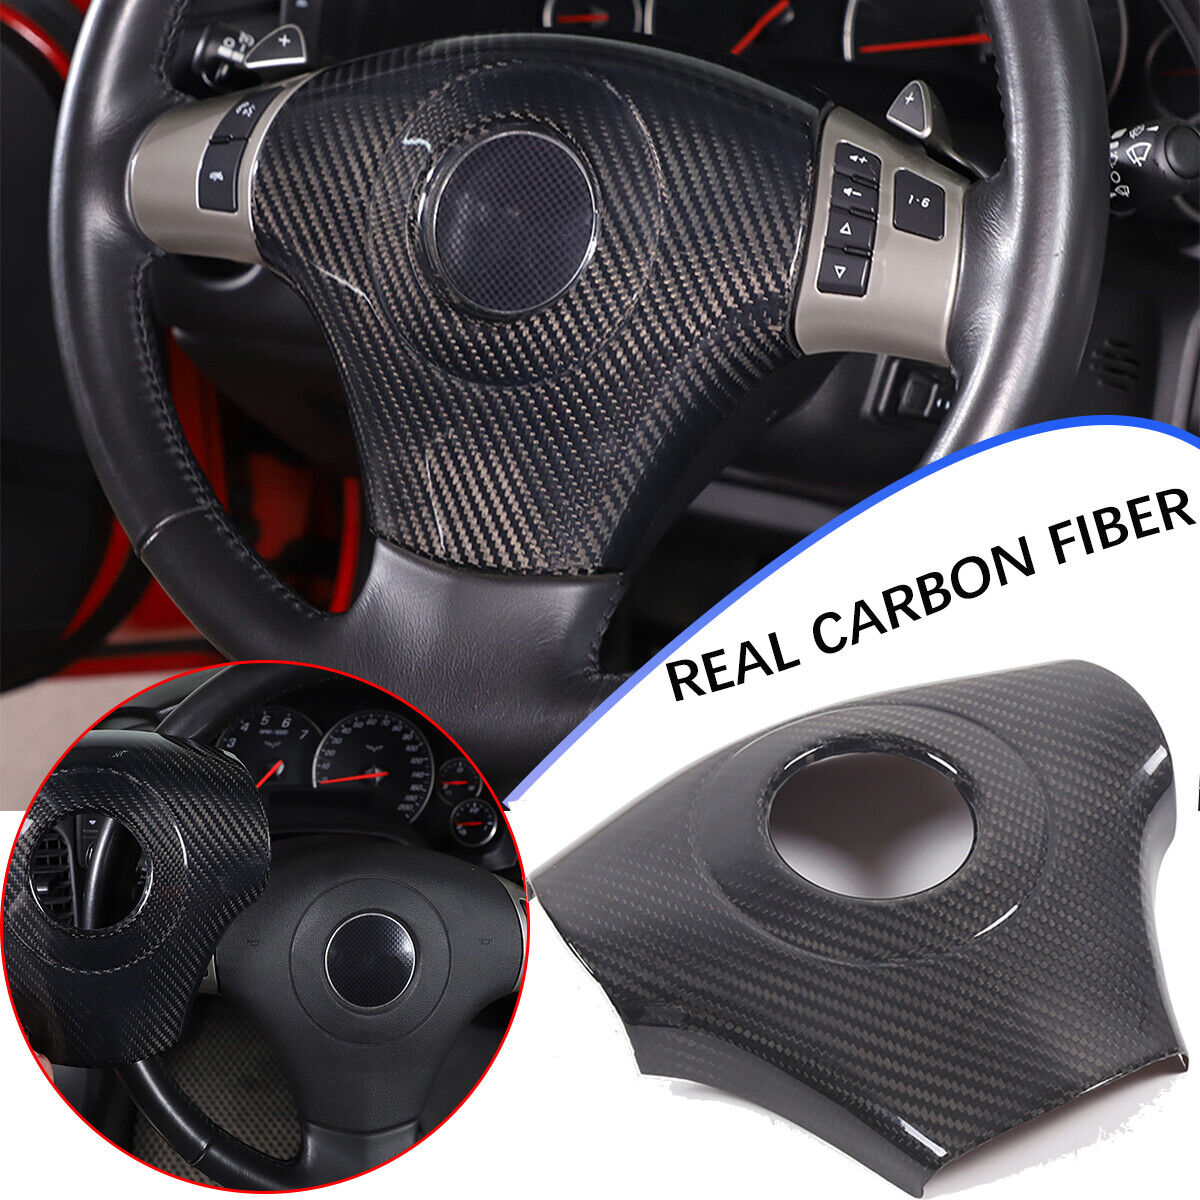 Real Dry Carbon fiber Center Steering wheel trim cover For Corvette C6 2005-2013